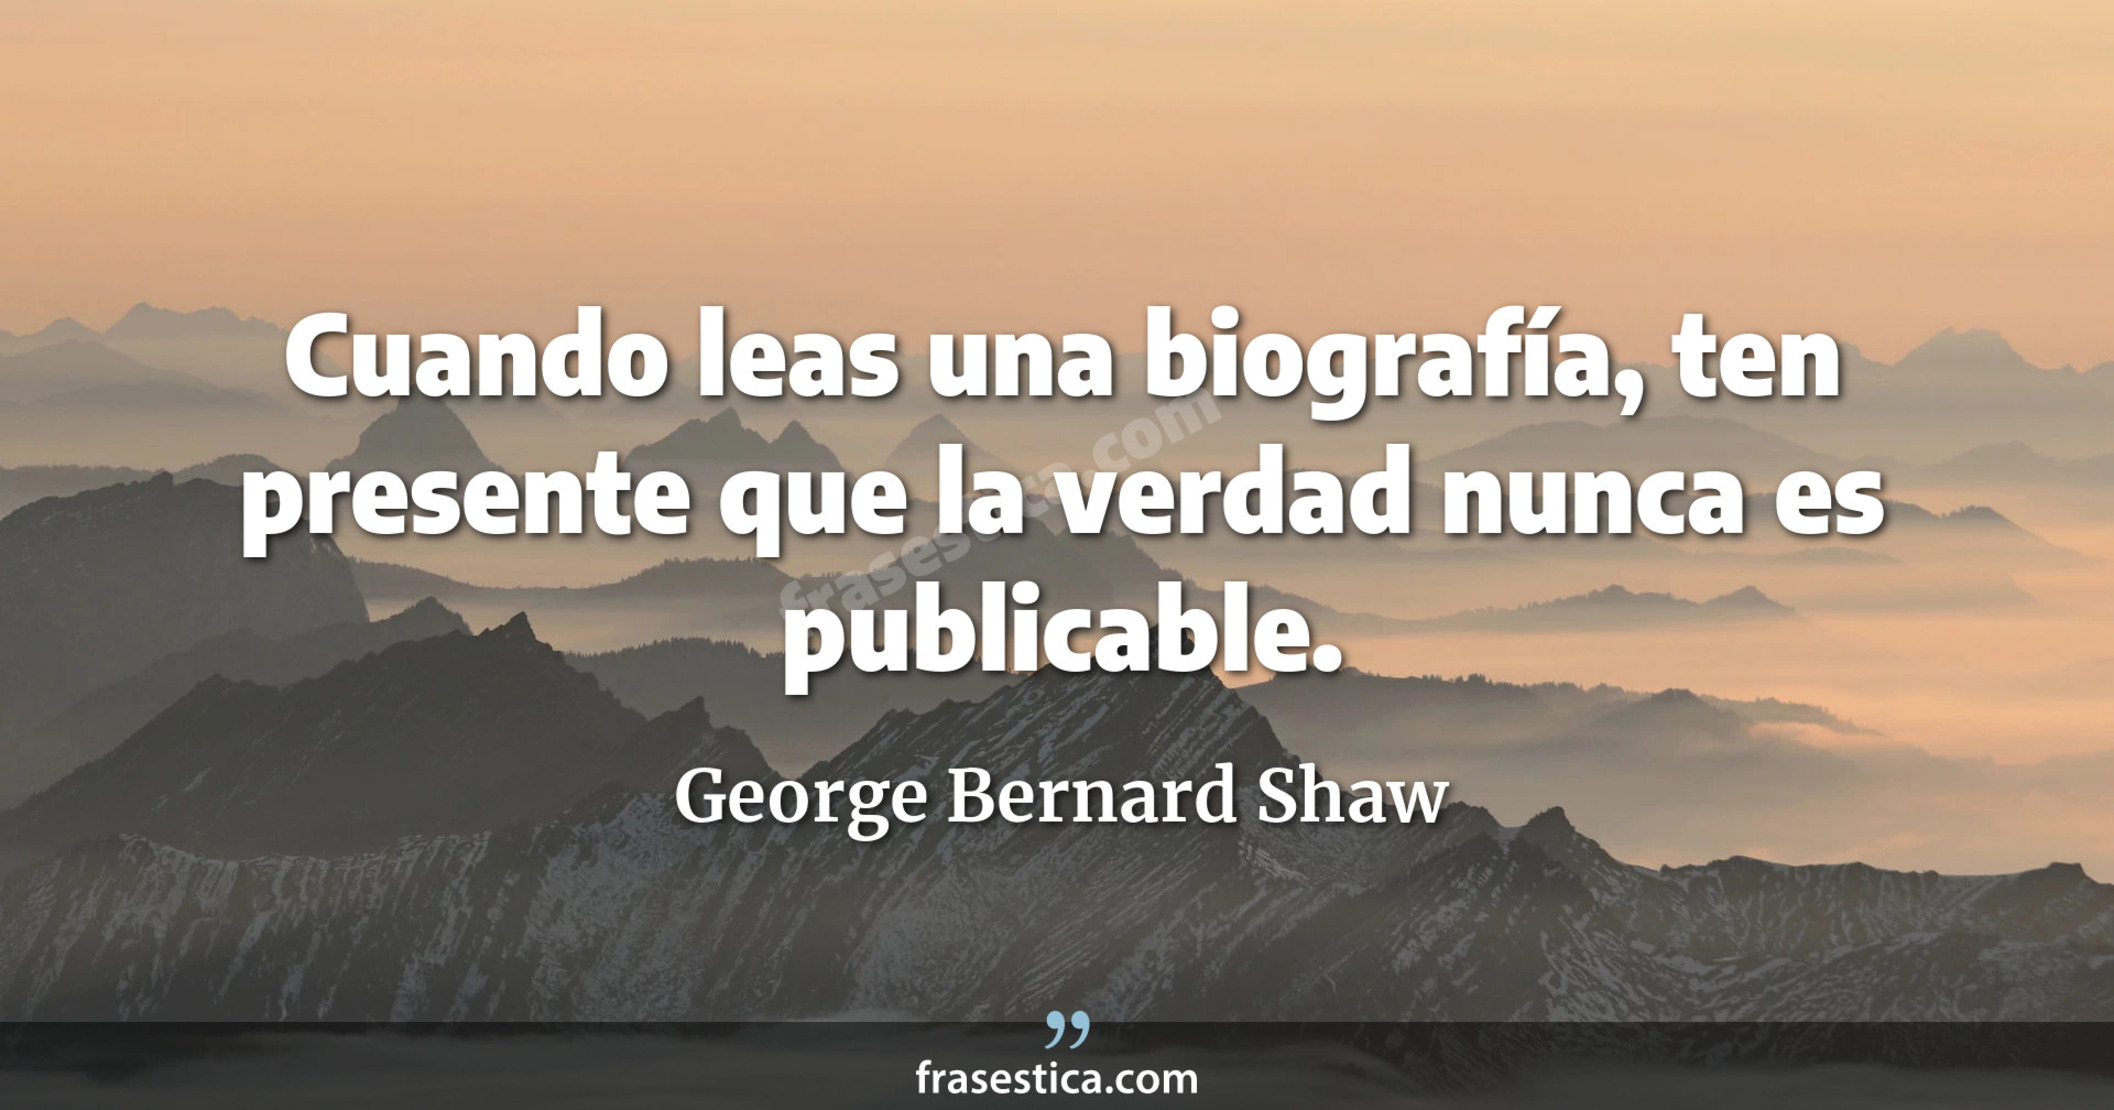 Cuando leas una biografía, ten presente que la verdad nunca es publicable. - George Bernard Shaw